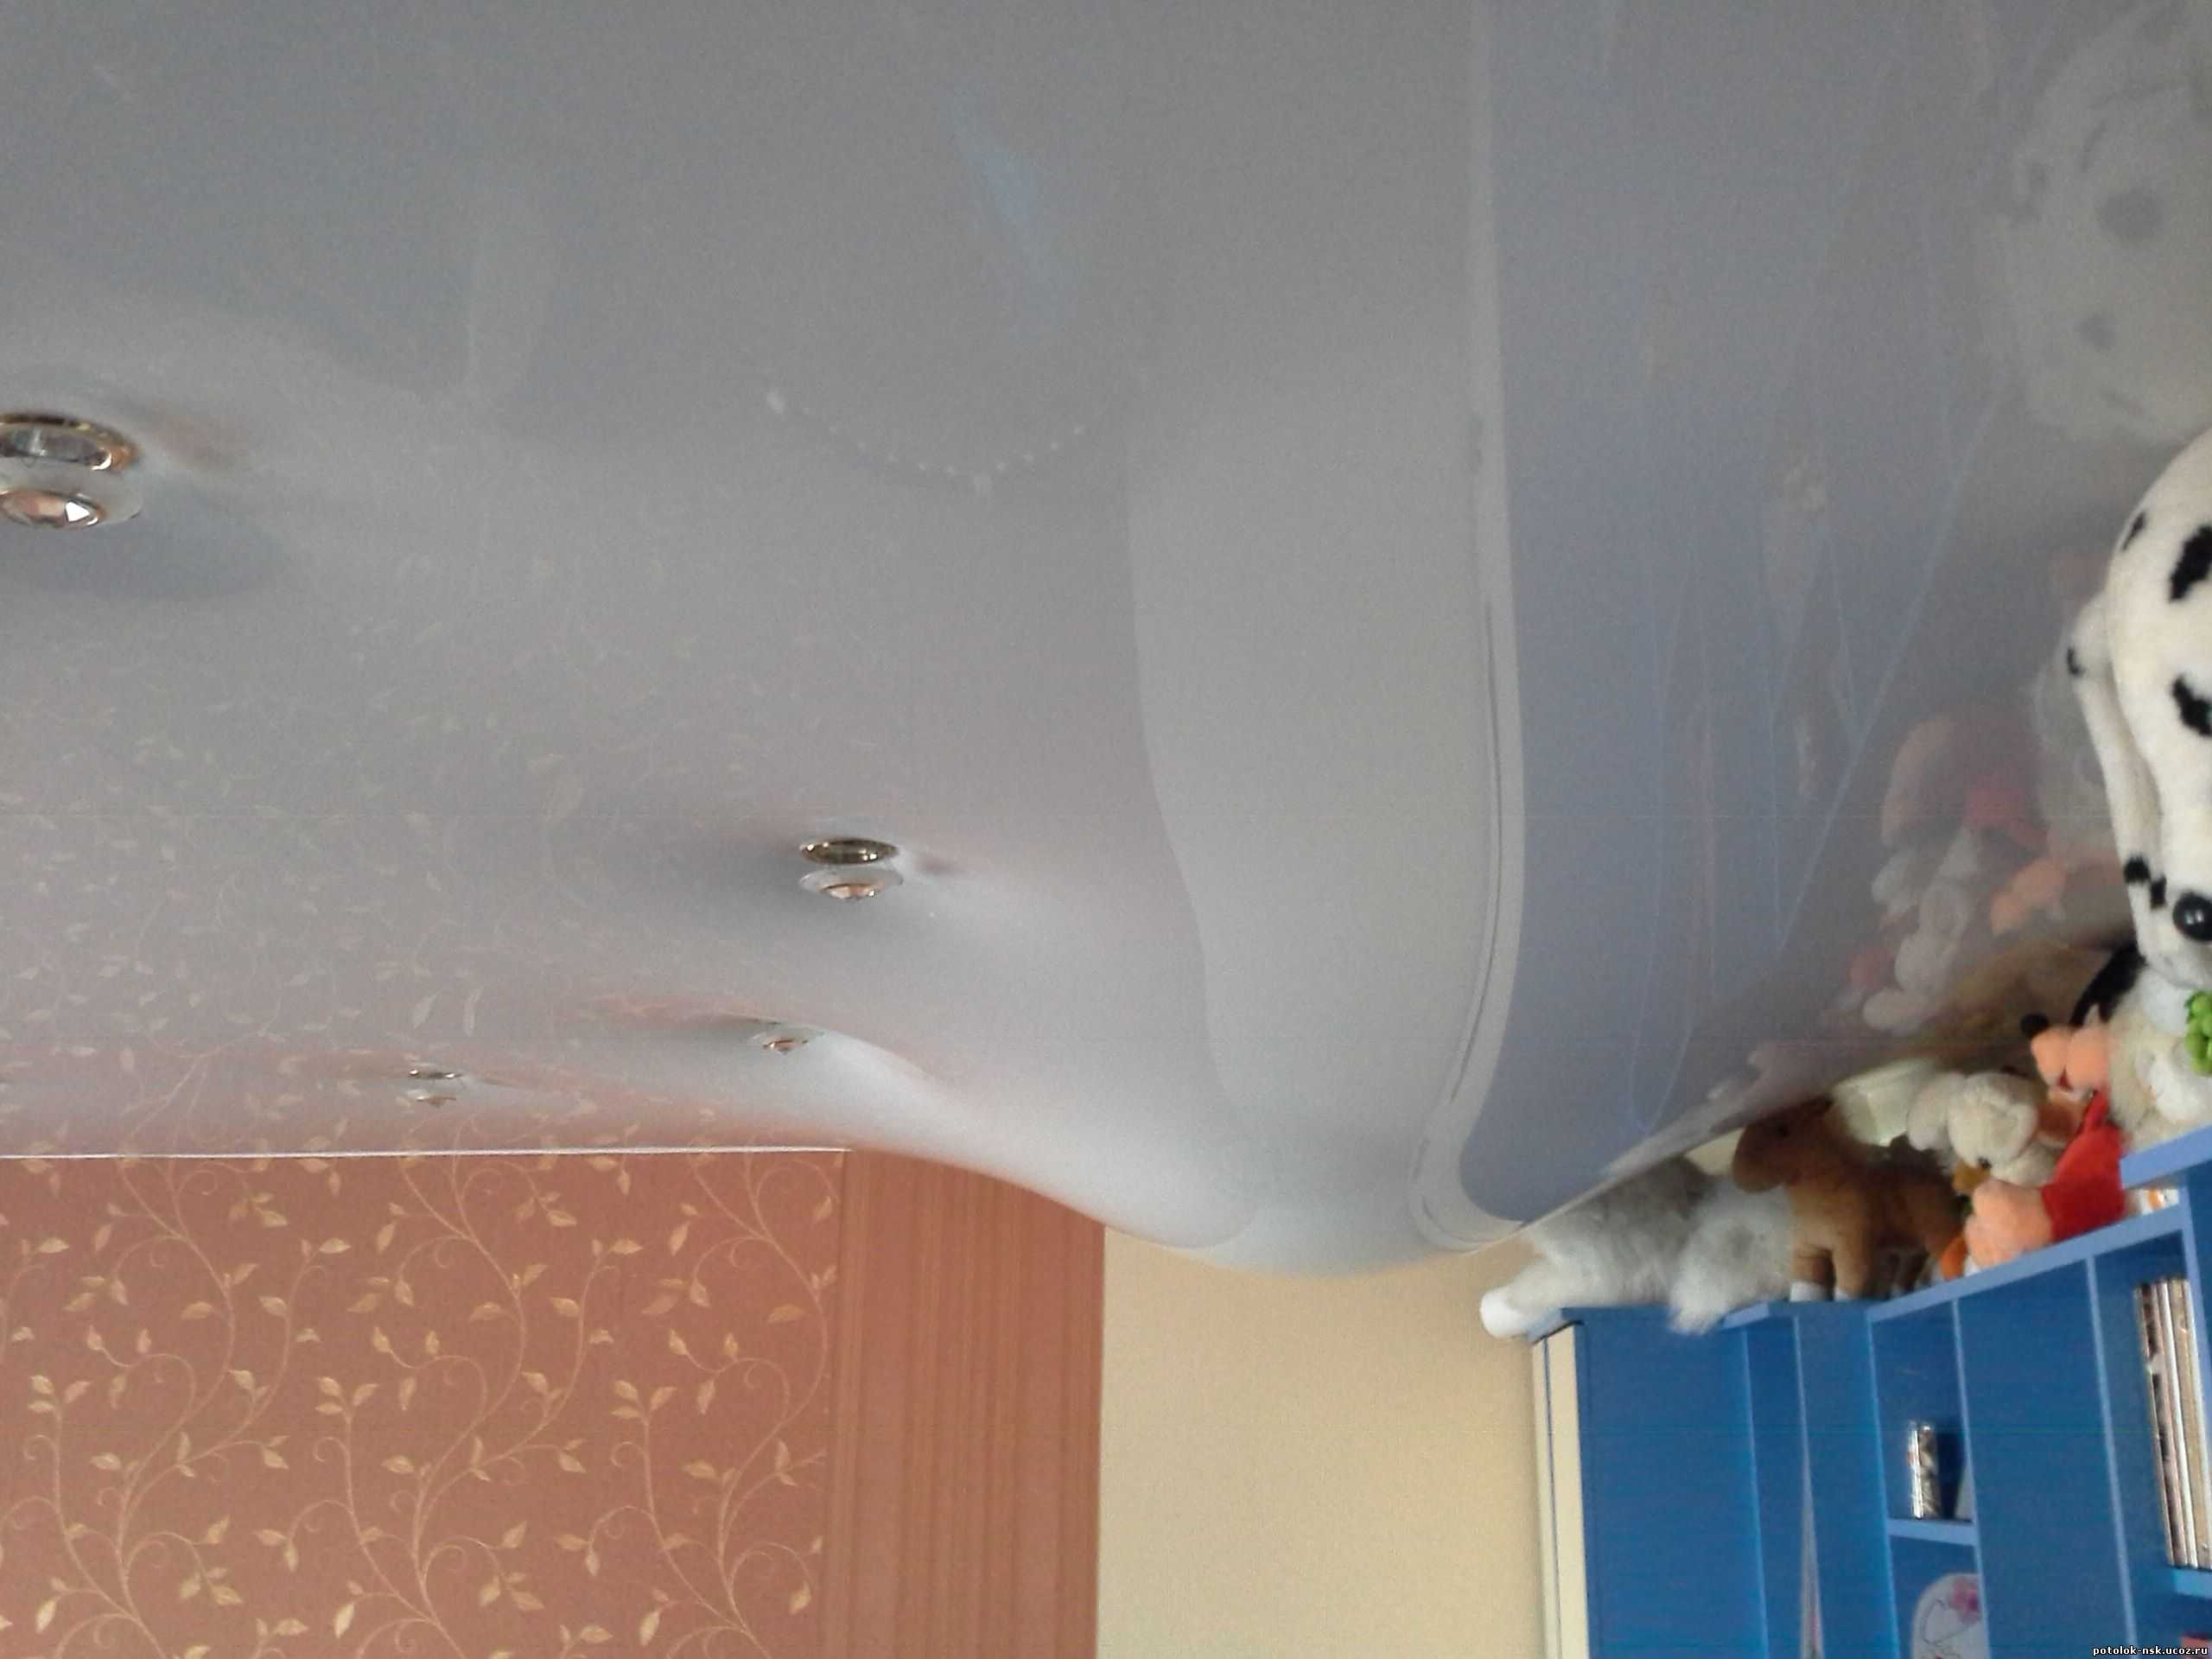 Как заклеить порез на натяжном потолке - всё о ремонте потолка